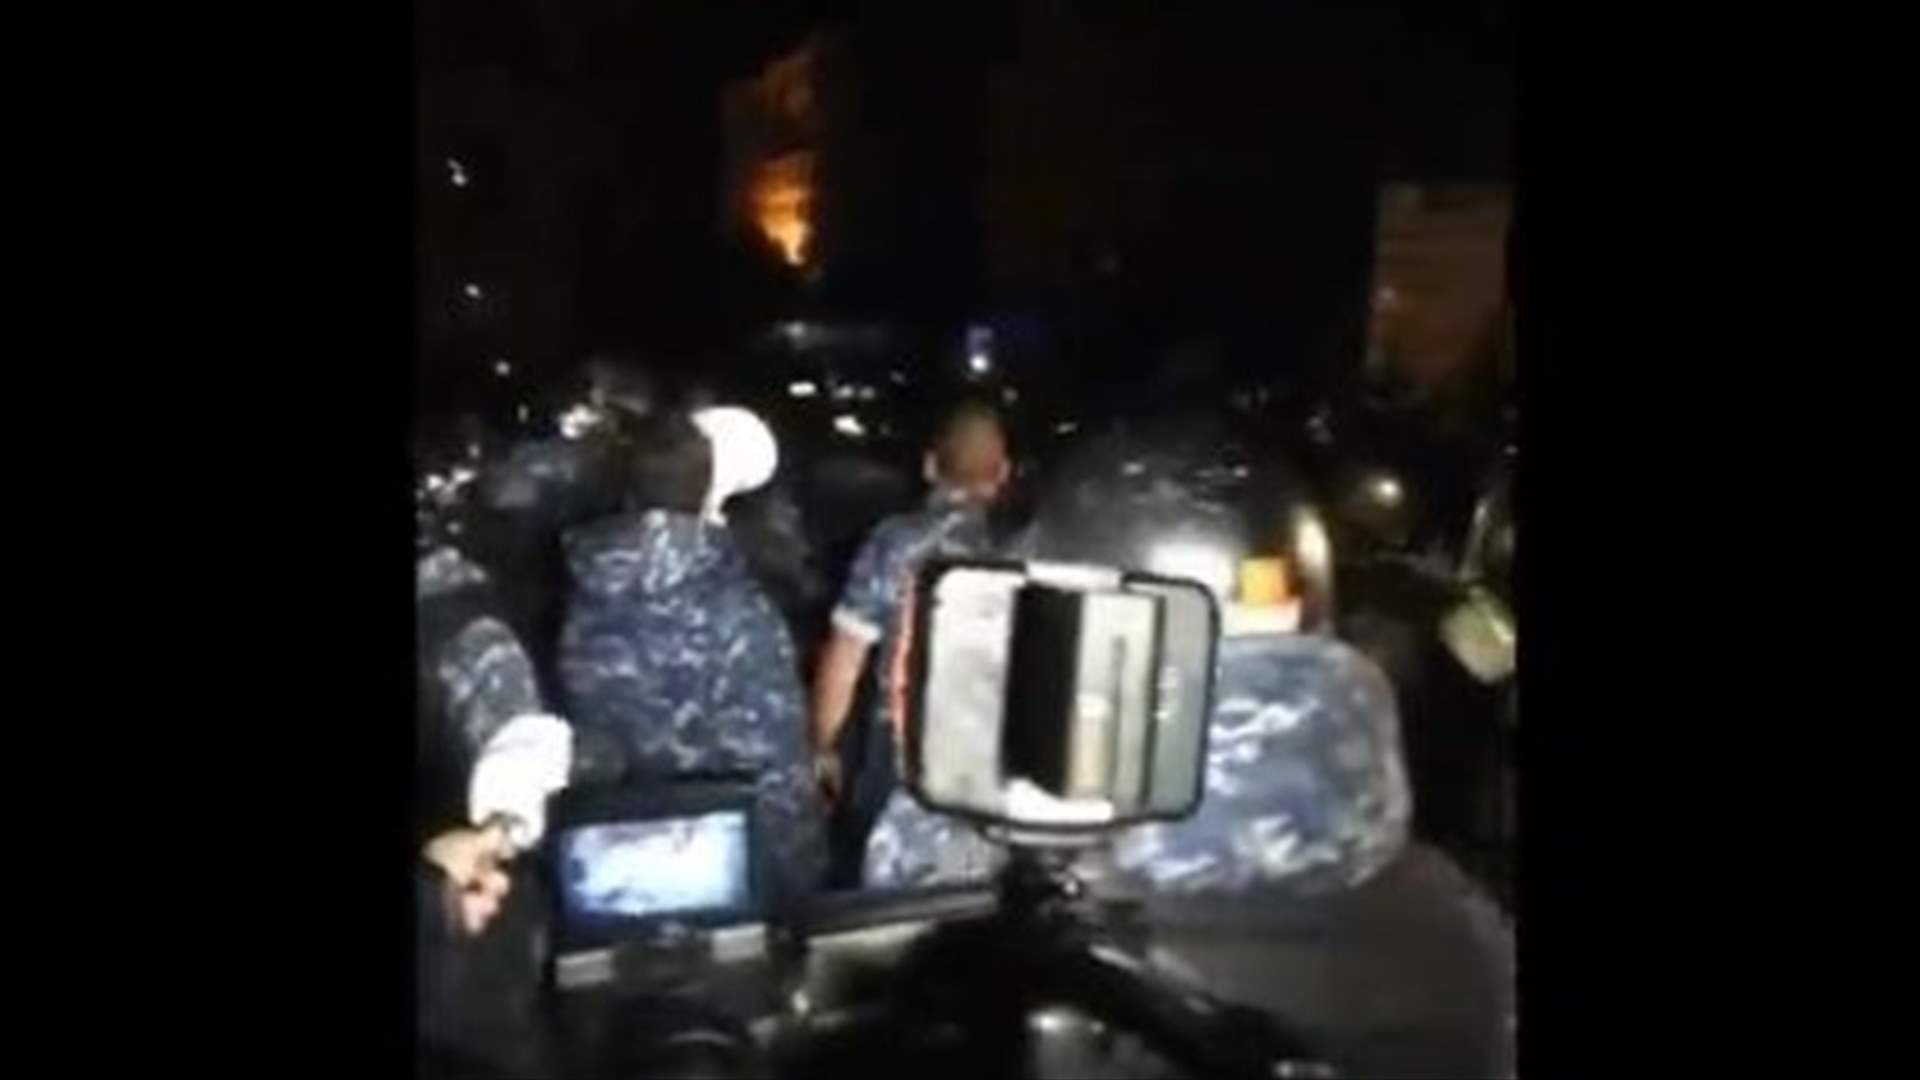 القوى الأمنية طلبت عبر مكبرات الصوت من المواطنين السلميين المغادرة أثناء مواجهات وسط بيروت (فيديو)